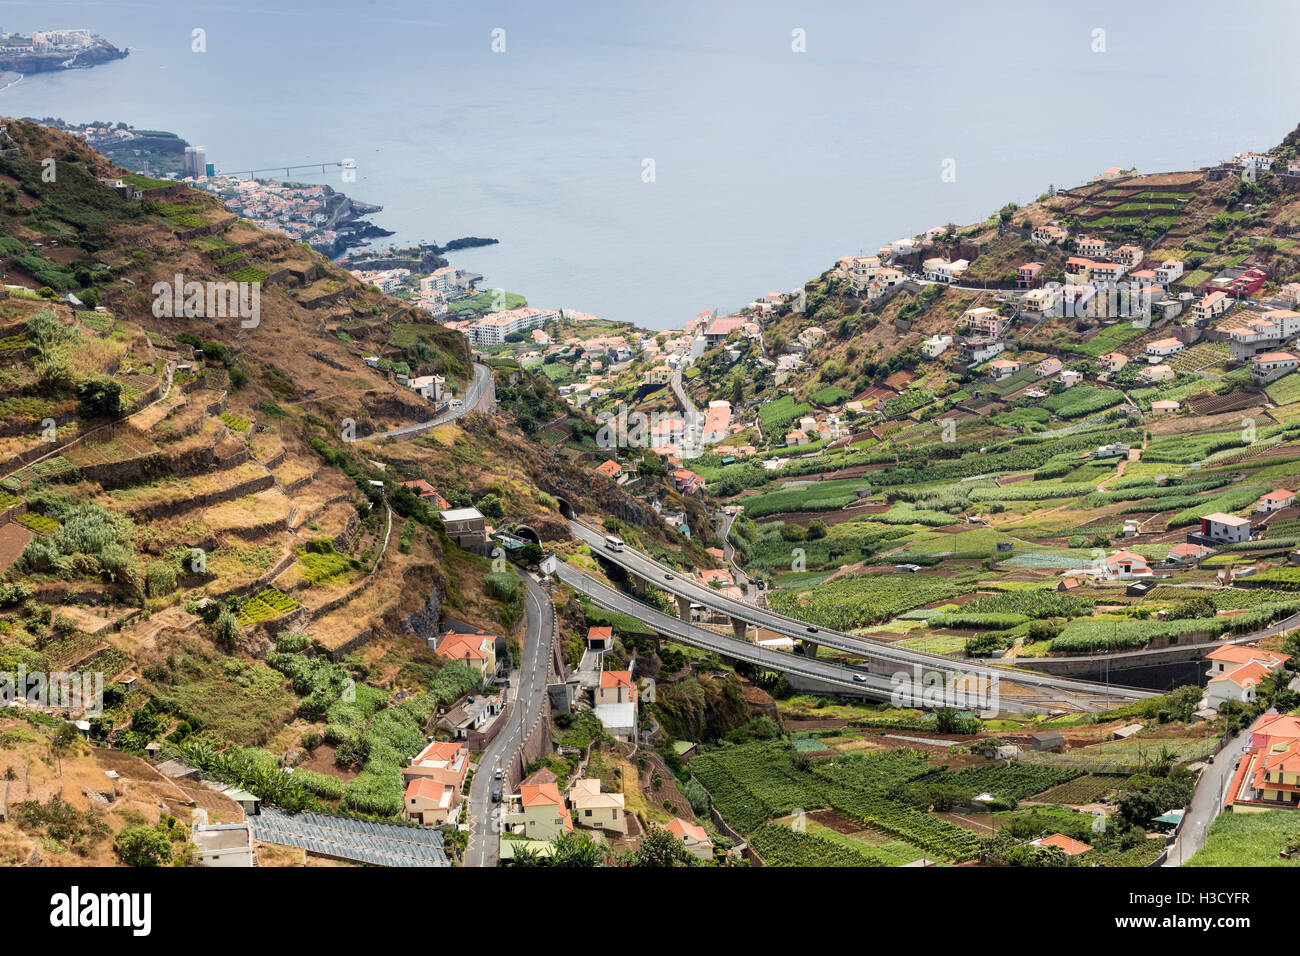 Landwirtschaft und Landschaften auf der Insel Madeira. Blick auf die terrassenförmig angelegten und gepflegten Land. Stockfoto